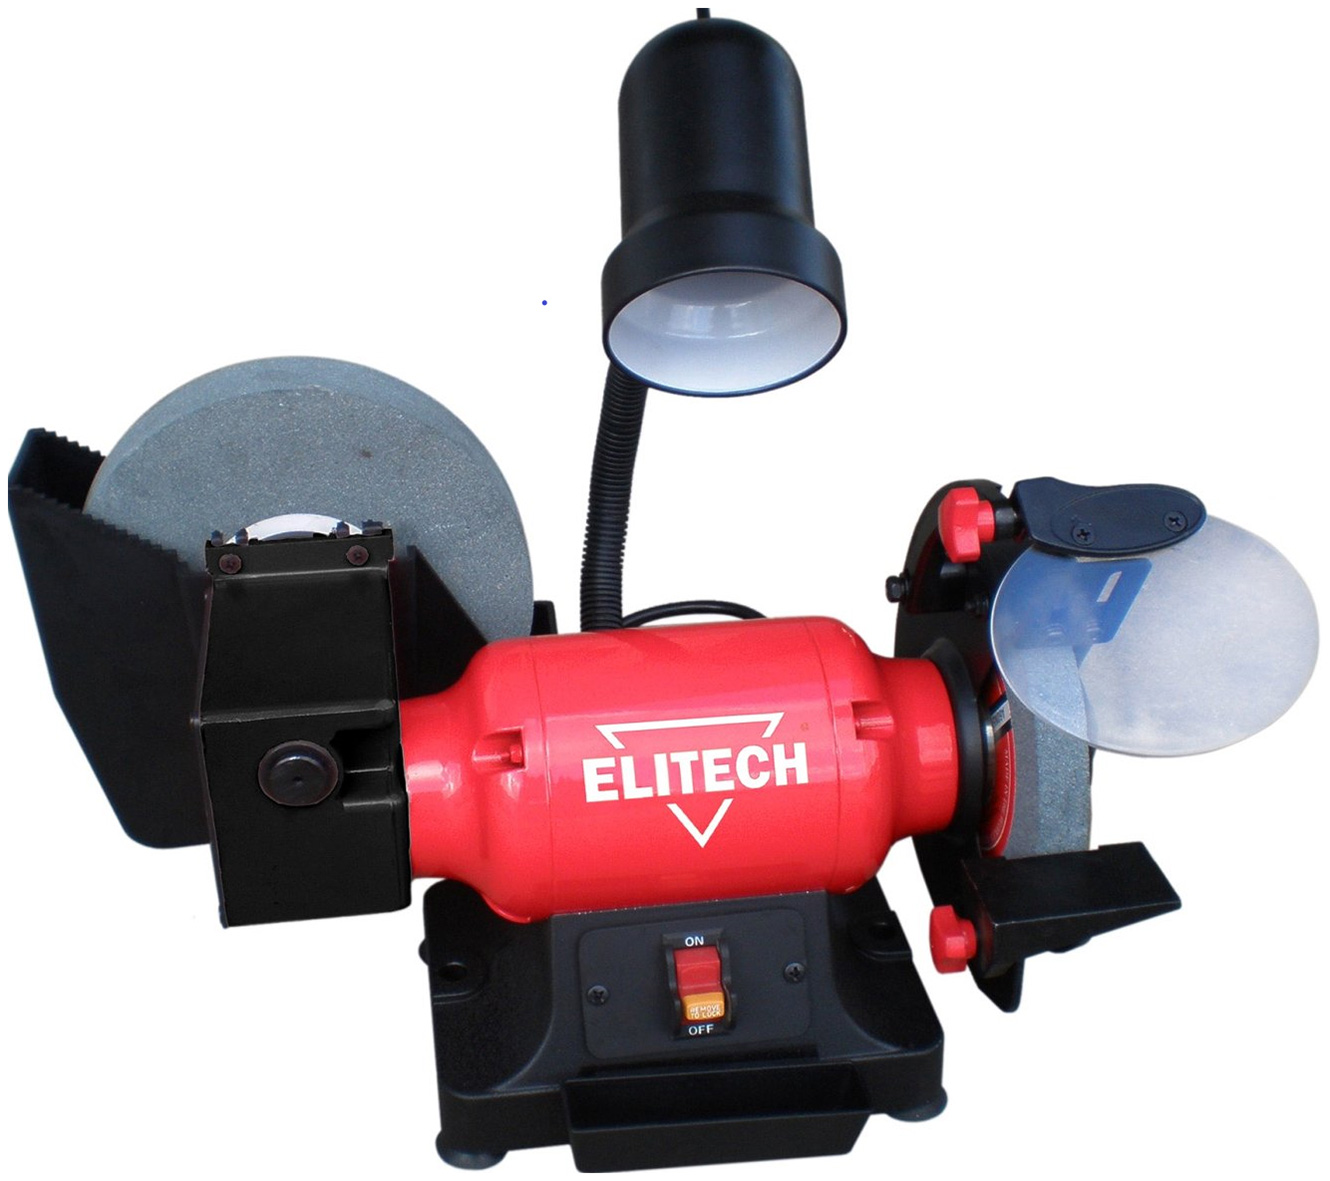 Станок заточной Elitech СТ 300MC станок для заточки elitech ст 150 e2013 002 00 202432